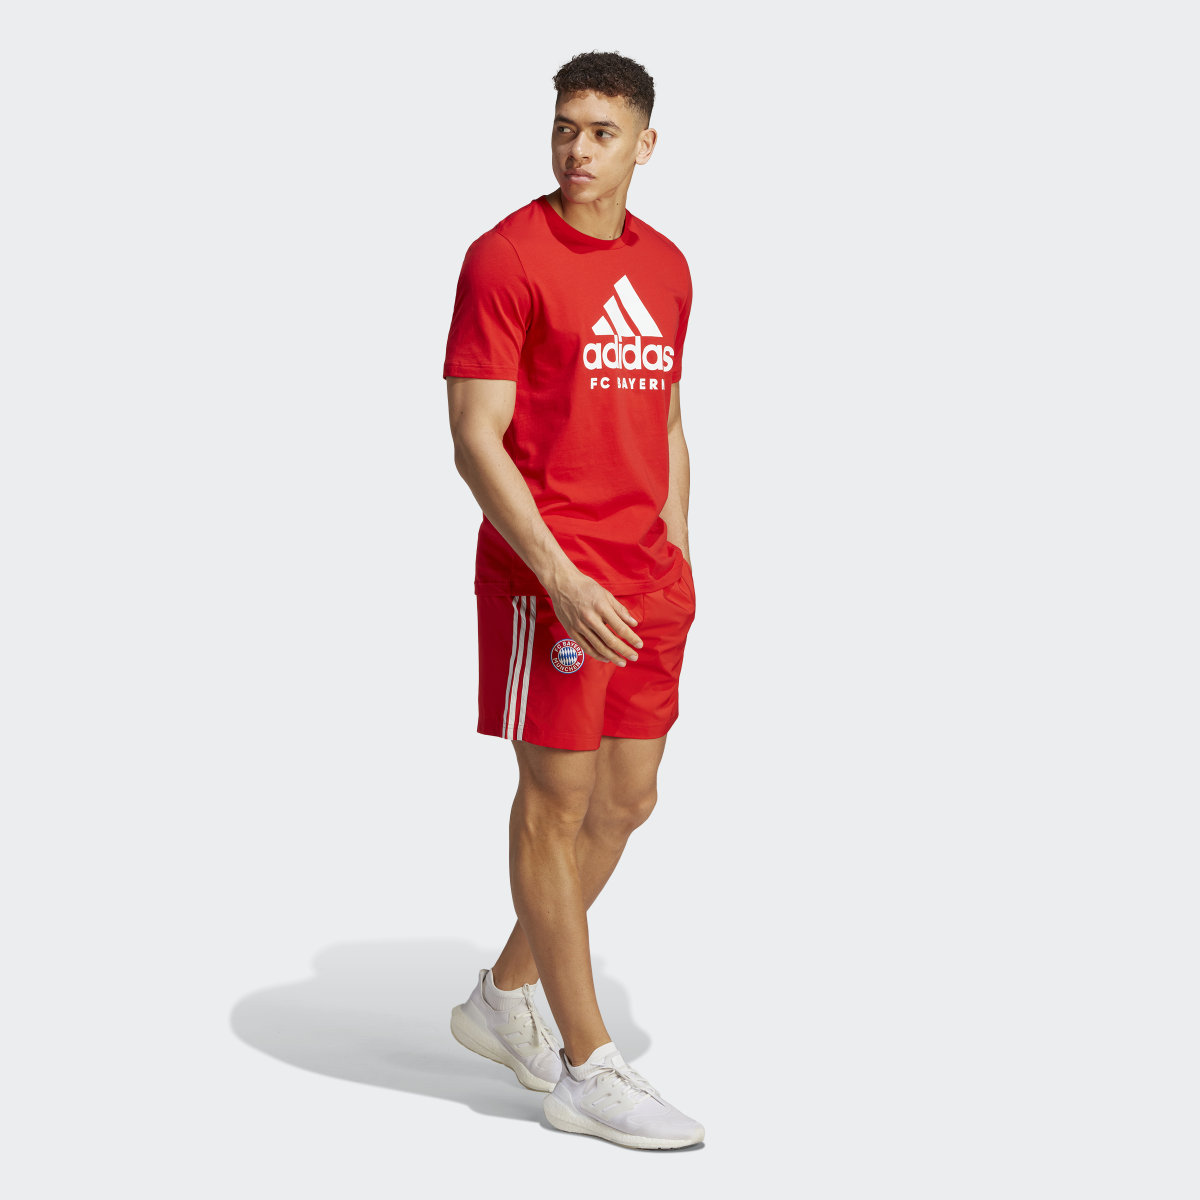 Adidas T-shirt DNA do FC Bayern München. 4